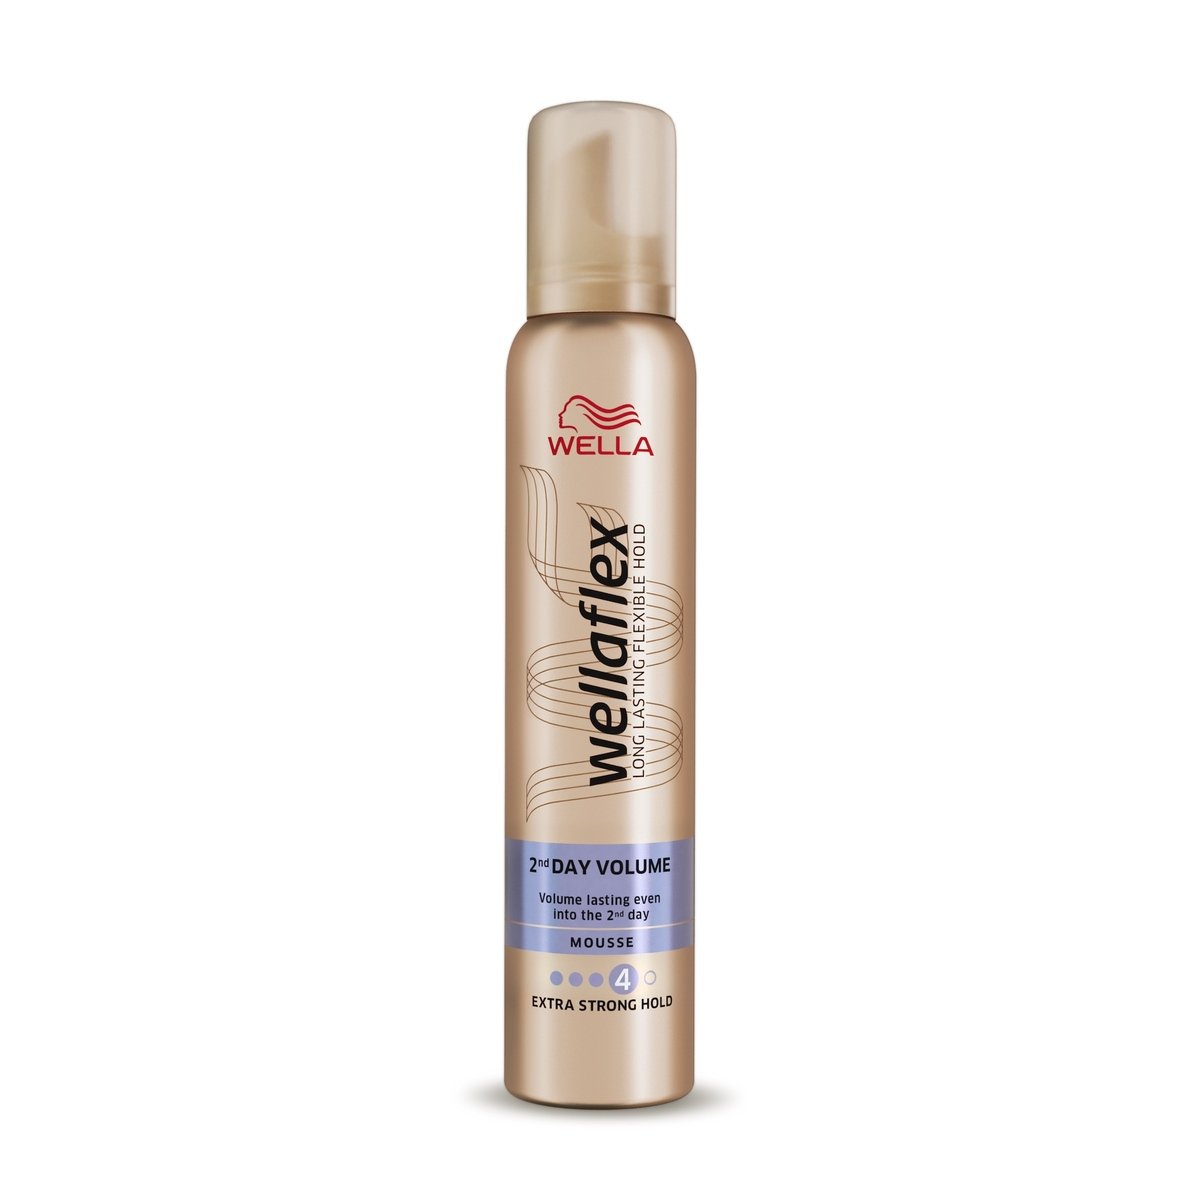 Buy Wella Wellaflex Extra Strong Hold Mousse 200 ml Online at Best Price | Hair Creams | Lulu UAE in UAE